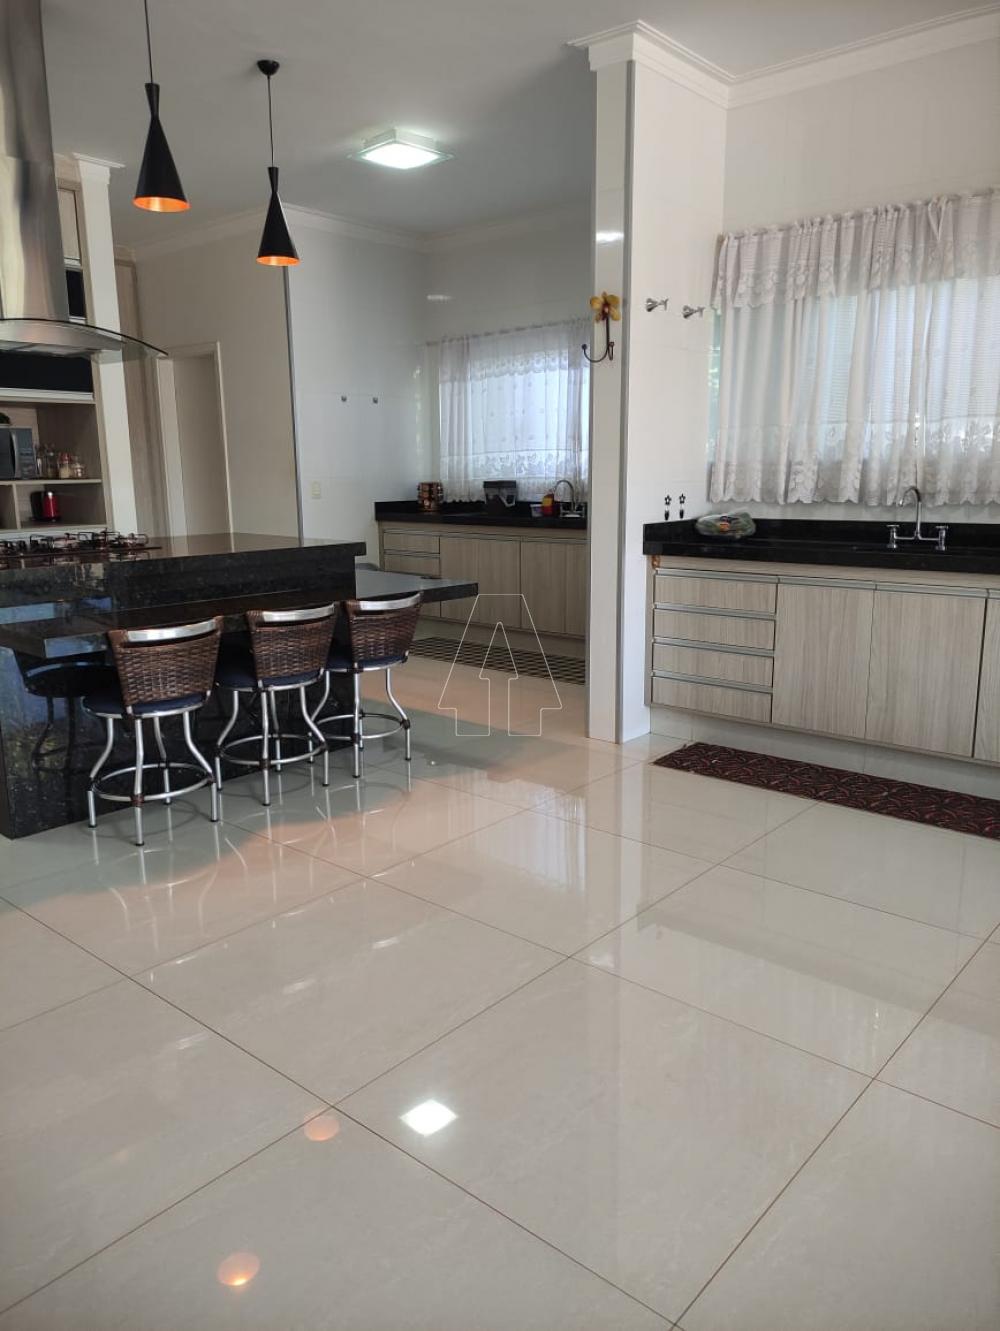 Comprar Casa / Condomínio em Araçatuba R$ 1.850.000,00 - Foto 8